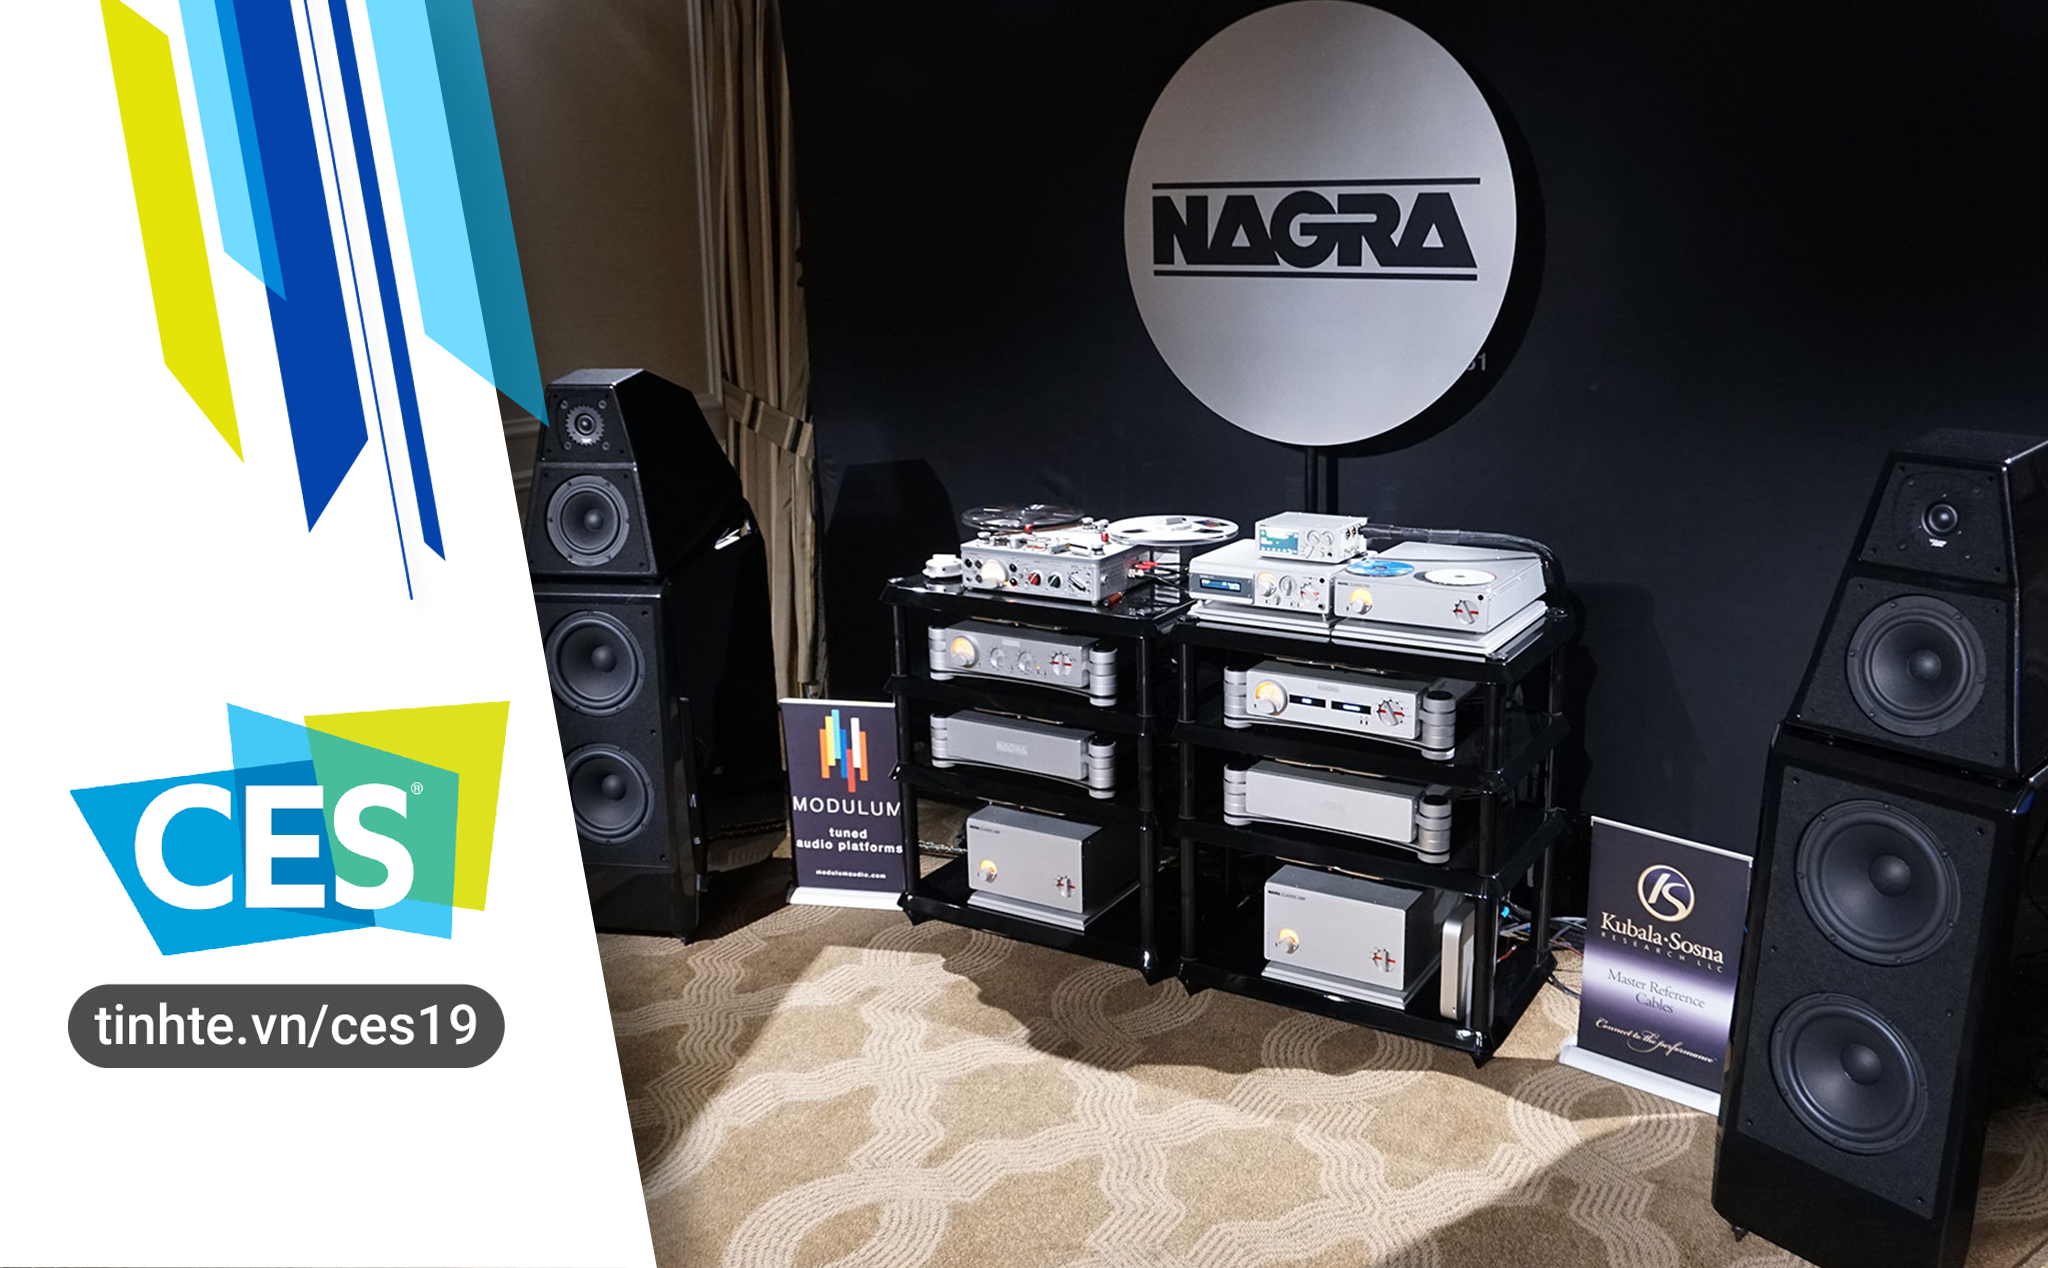 #CES19 : Nagra giới thiệu giải mã DAC HD X và máy ghi âm Naga VII Edition